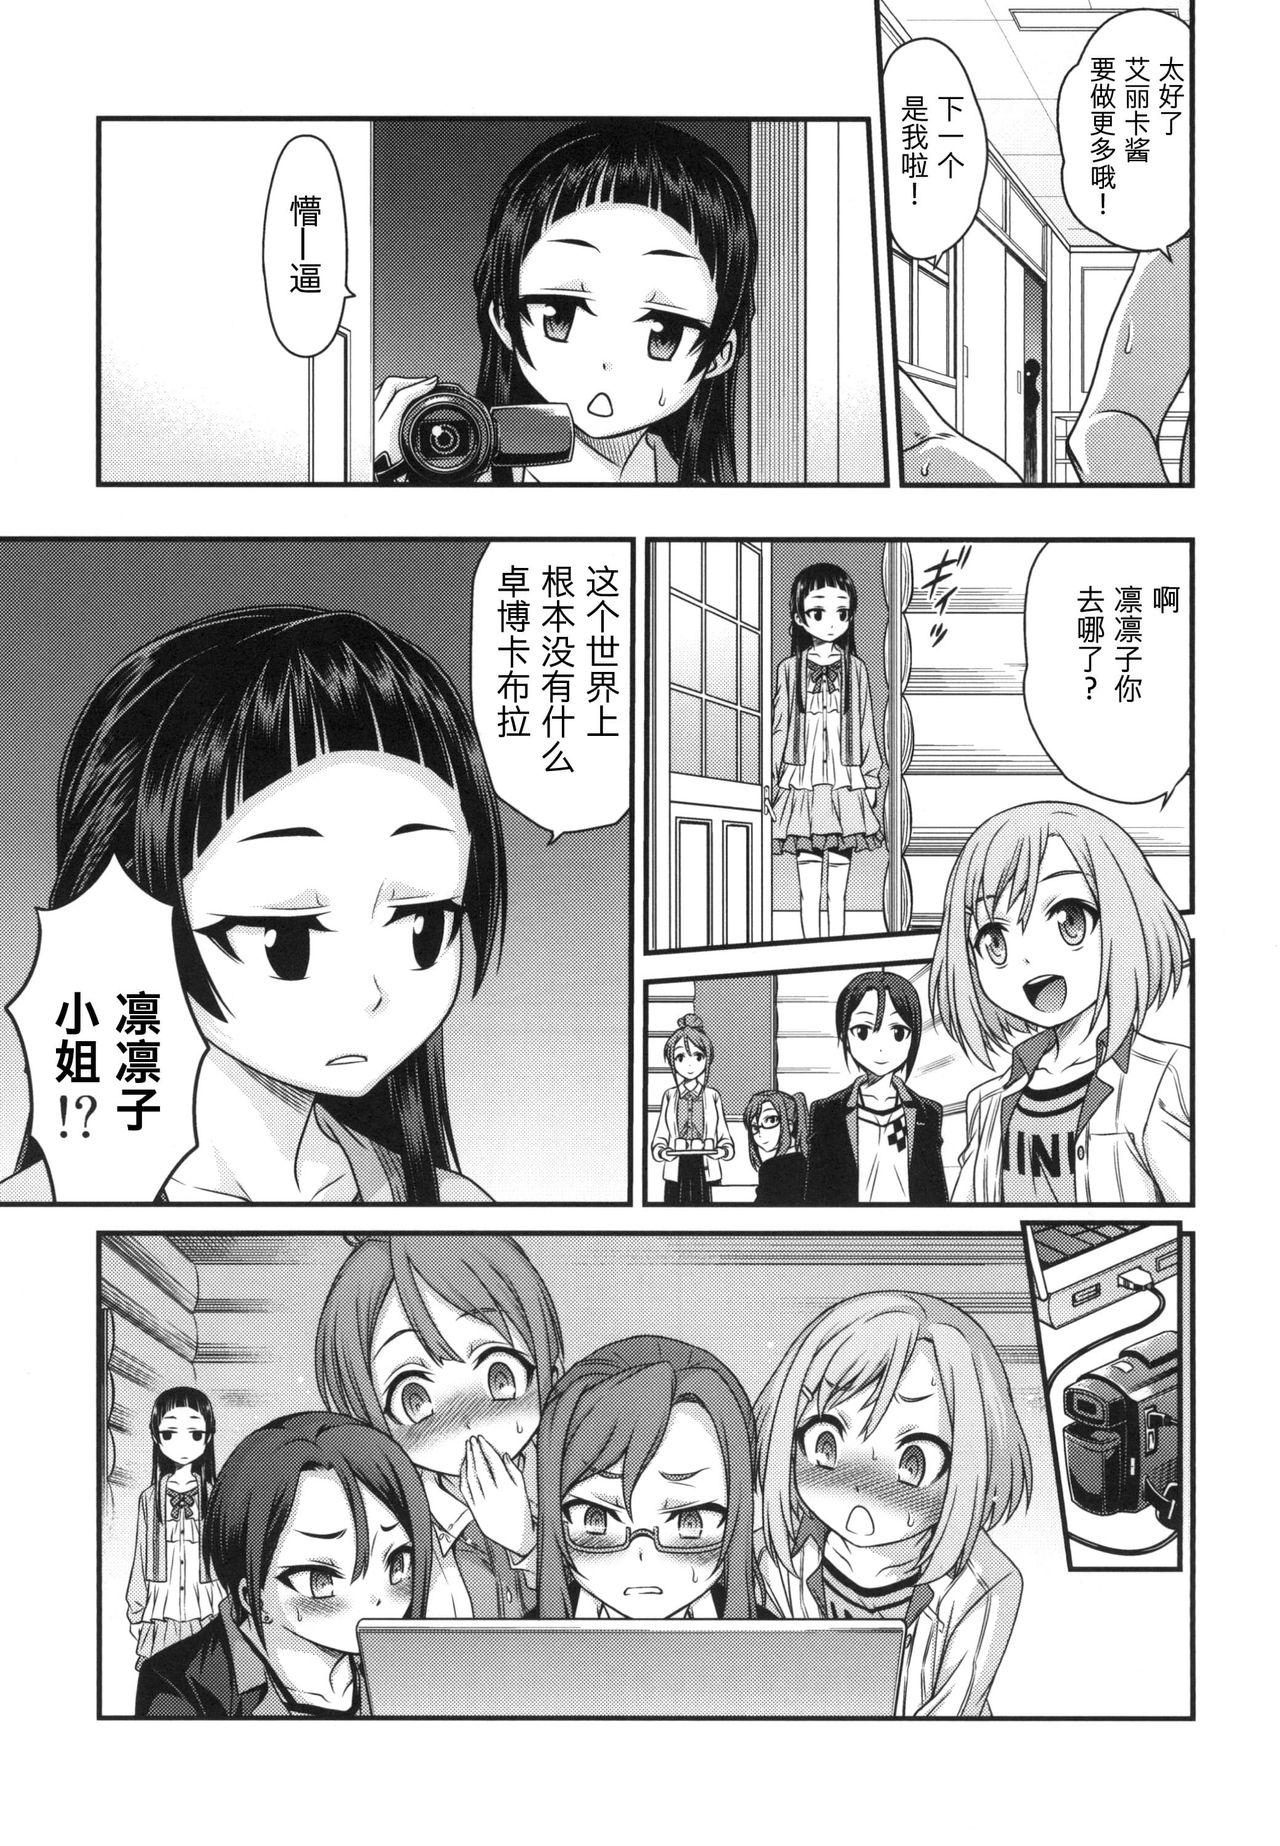 Jerk Erika no ChupaChupa Quest!! - Sakura quest Ecchi - Page 24